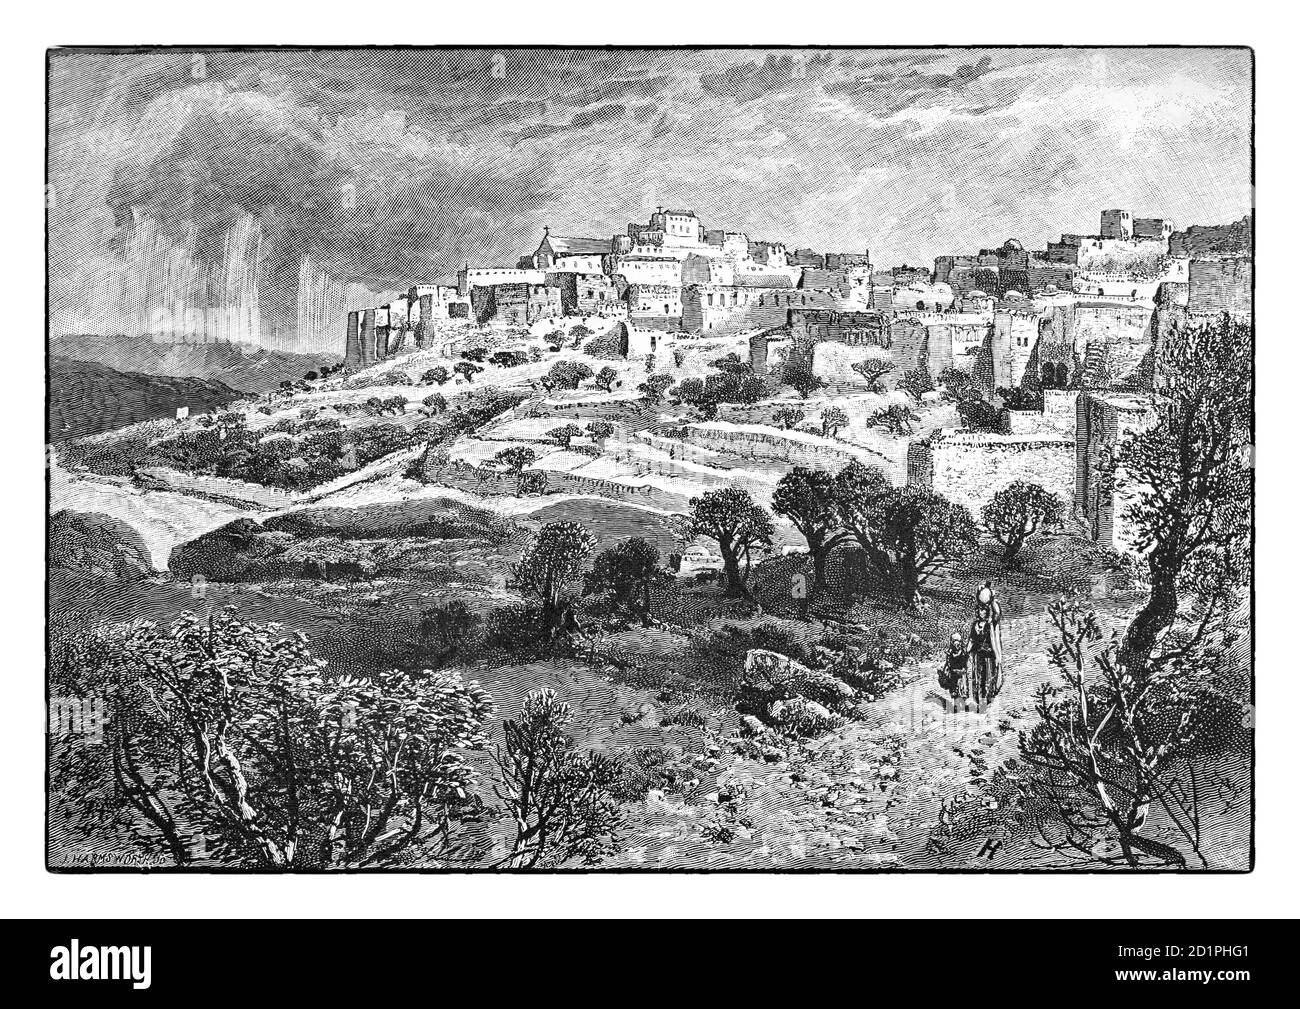 Una vista del 19 ° secolo di Betlemme, luogo di nascita di Cristo, una città situata nella Cisgiordania centrale, Palestina, a circa 10 km (6.2 miglia) a sud di Gerusalemme. Al tempo del disegno, la città era stata sotto il dominio ottomano una volta dal 1841 e lo è rimasto fino alla fine della prima guerra mondiale Foto Stock